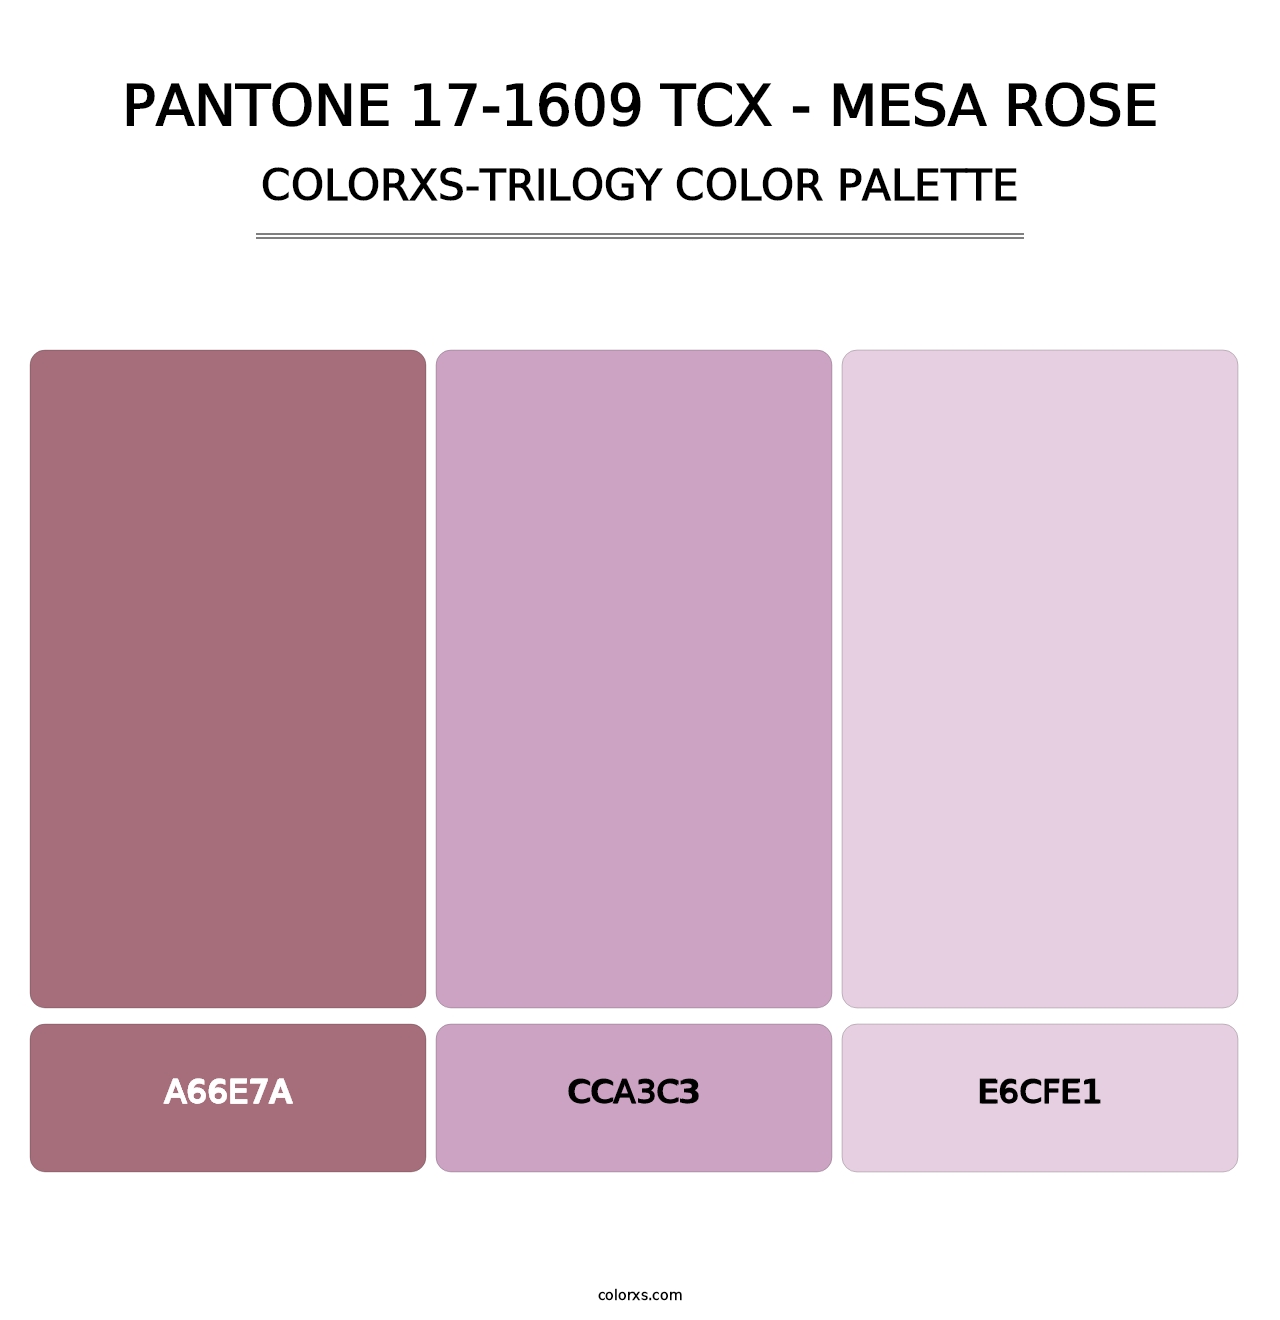 PANTONE 17-1609 TCX - Mesa Rose - Colorxs Trilogy Palette